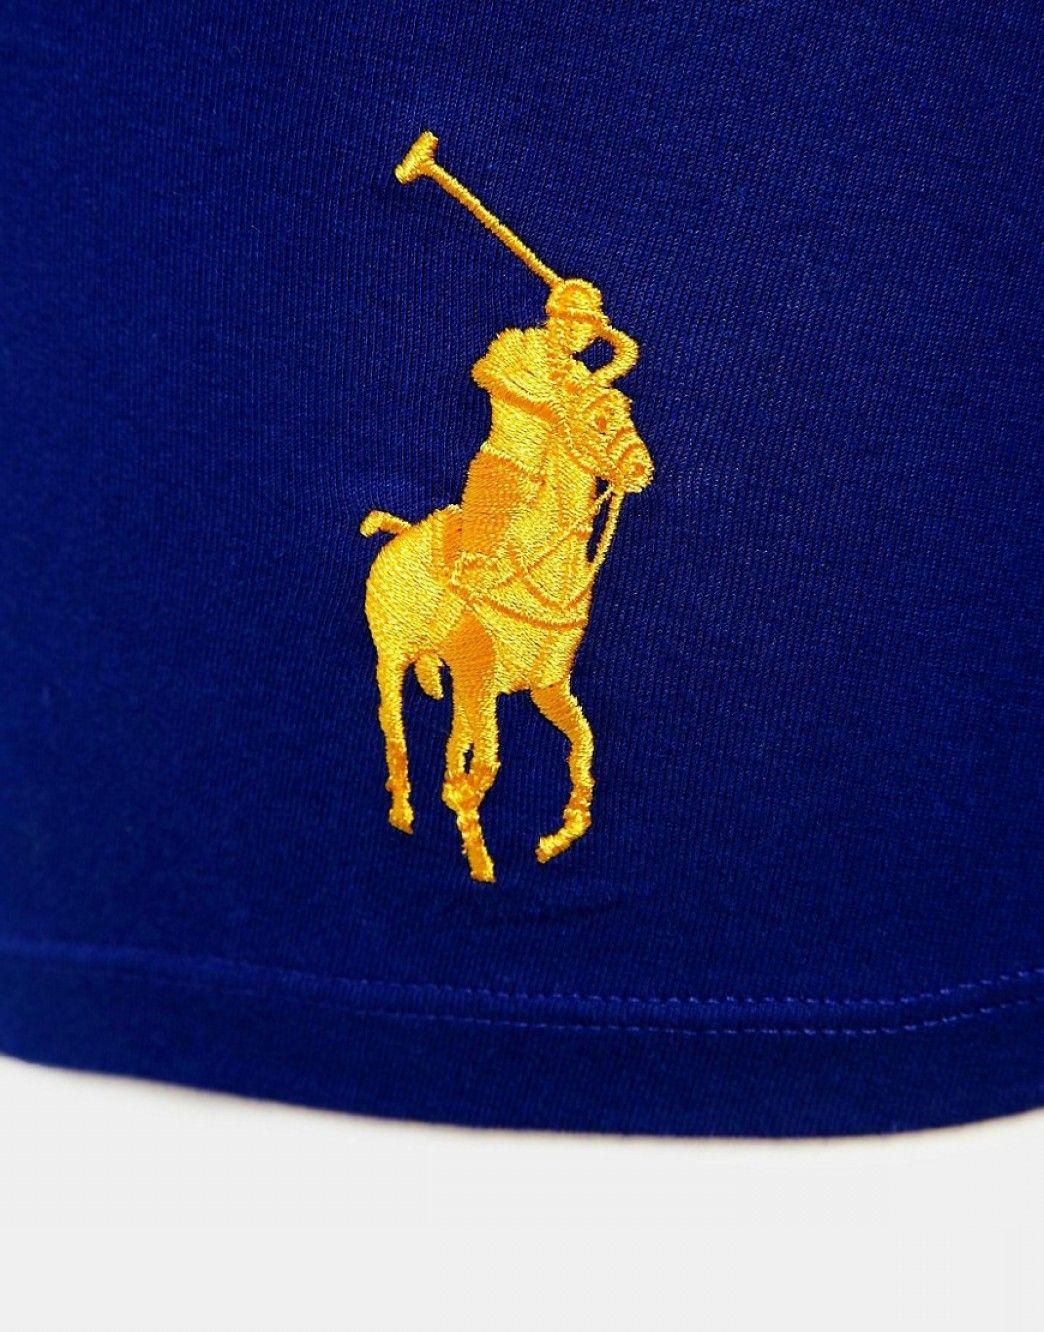 Blue Polo Logo - Polo Ralph Lauren Vector Logo